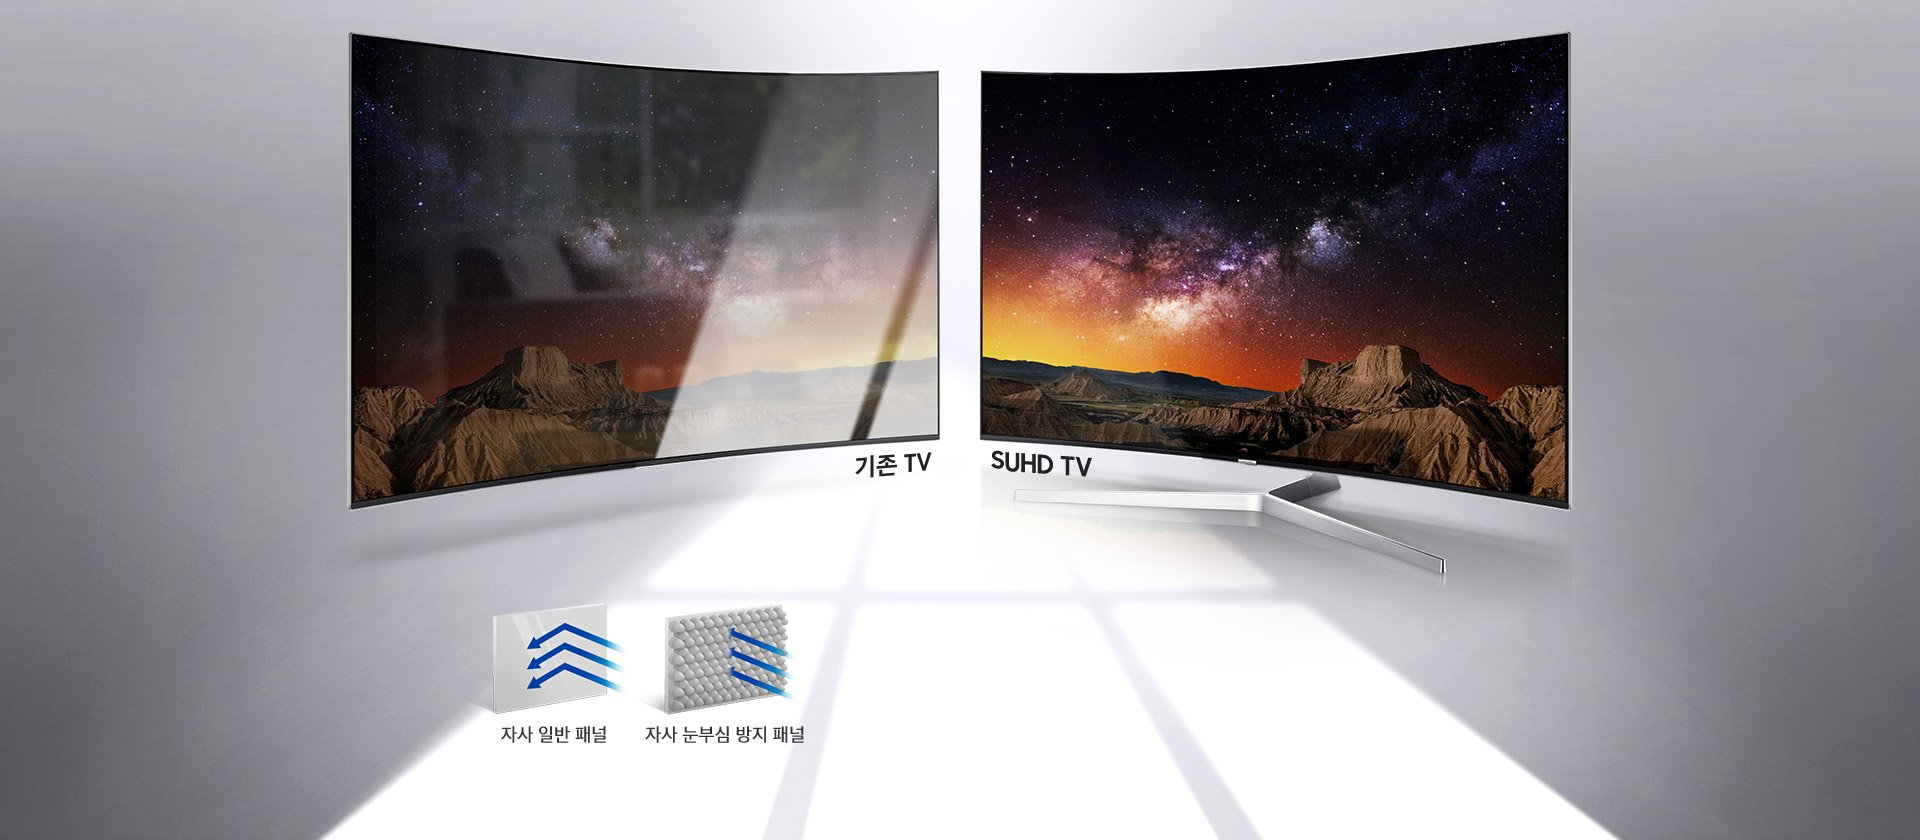 Công nghệ hình ảnh nổi bật trên Tivi Samsung SUHD 2016